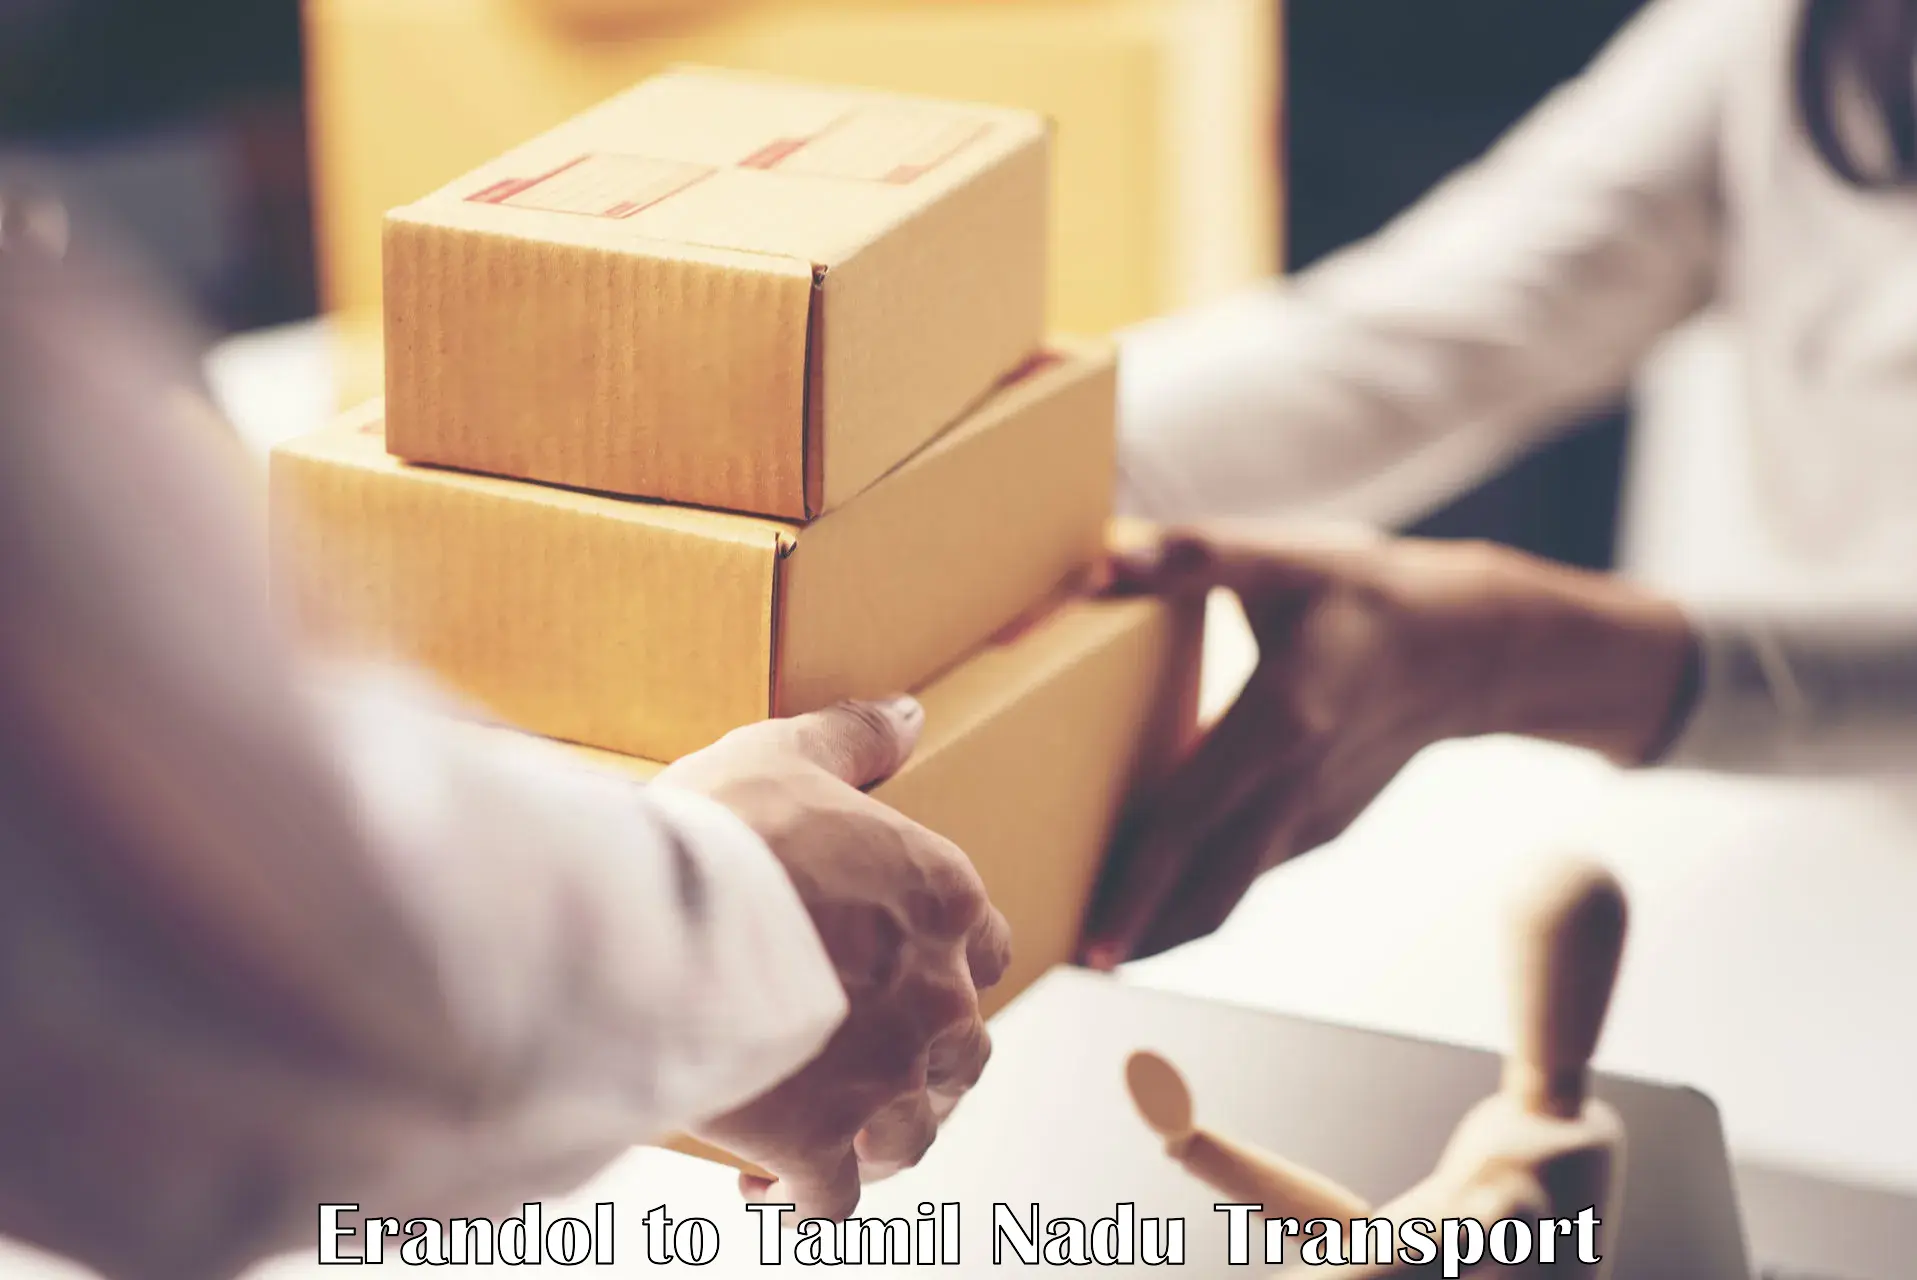 International cargo transportation services Erandol to IIIT Tiruchirappalli